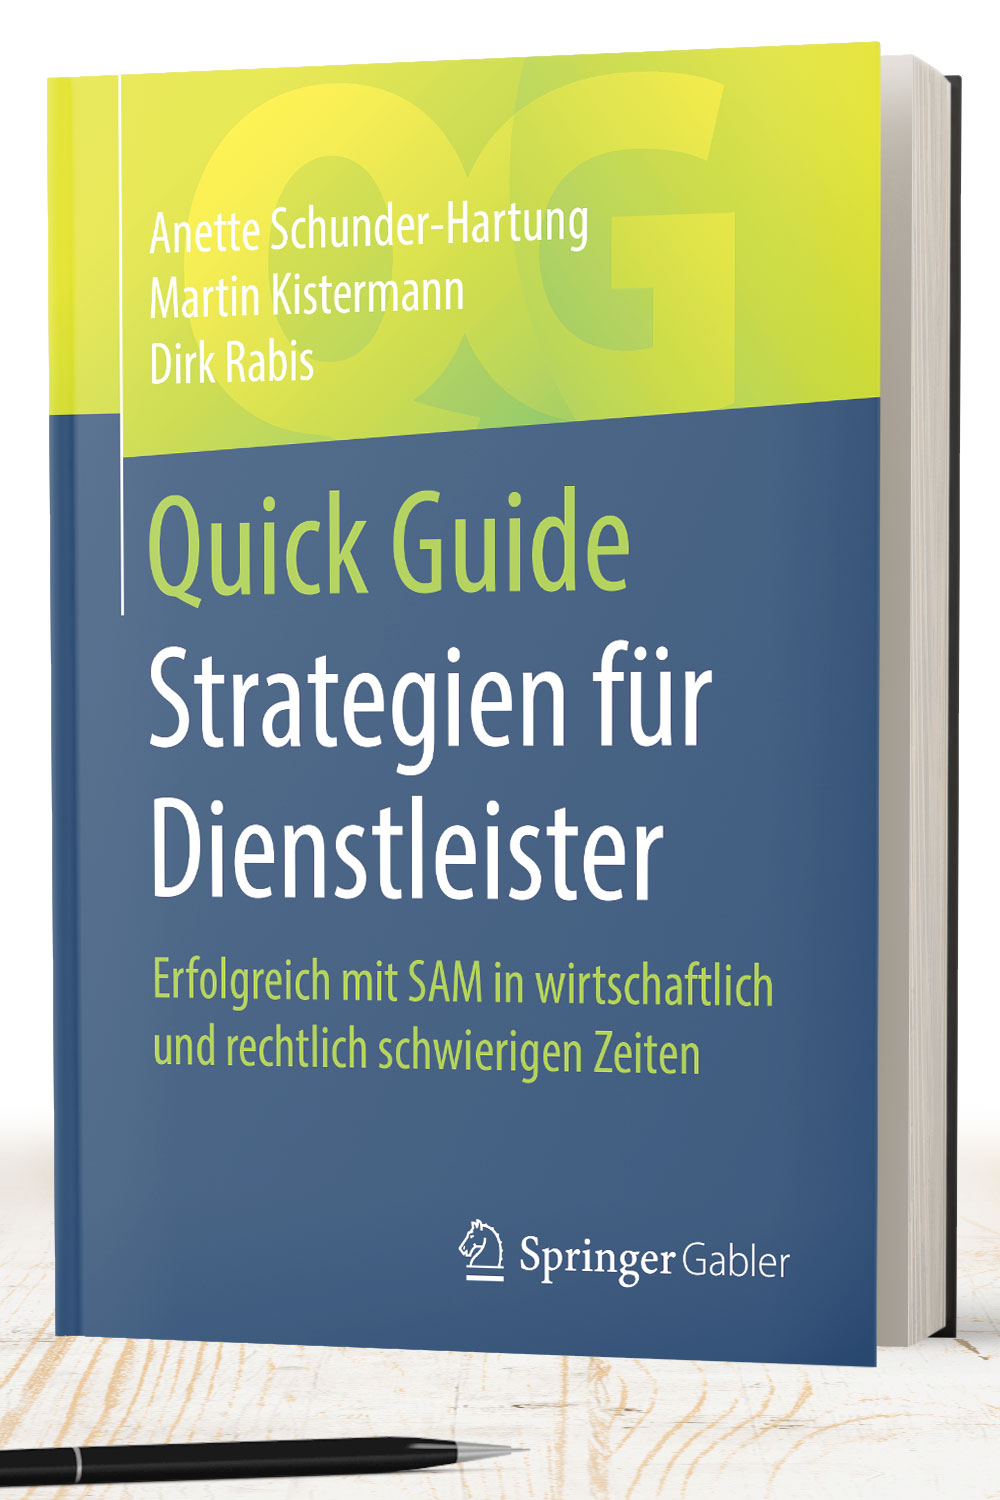 Das Buch Strategien für Dienstleister - Erfolgreicher mit SAM in wirtschaftlich und rechtlich schwierigen Zeiten. Cover-Design 4a Dirk Rabis